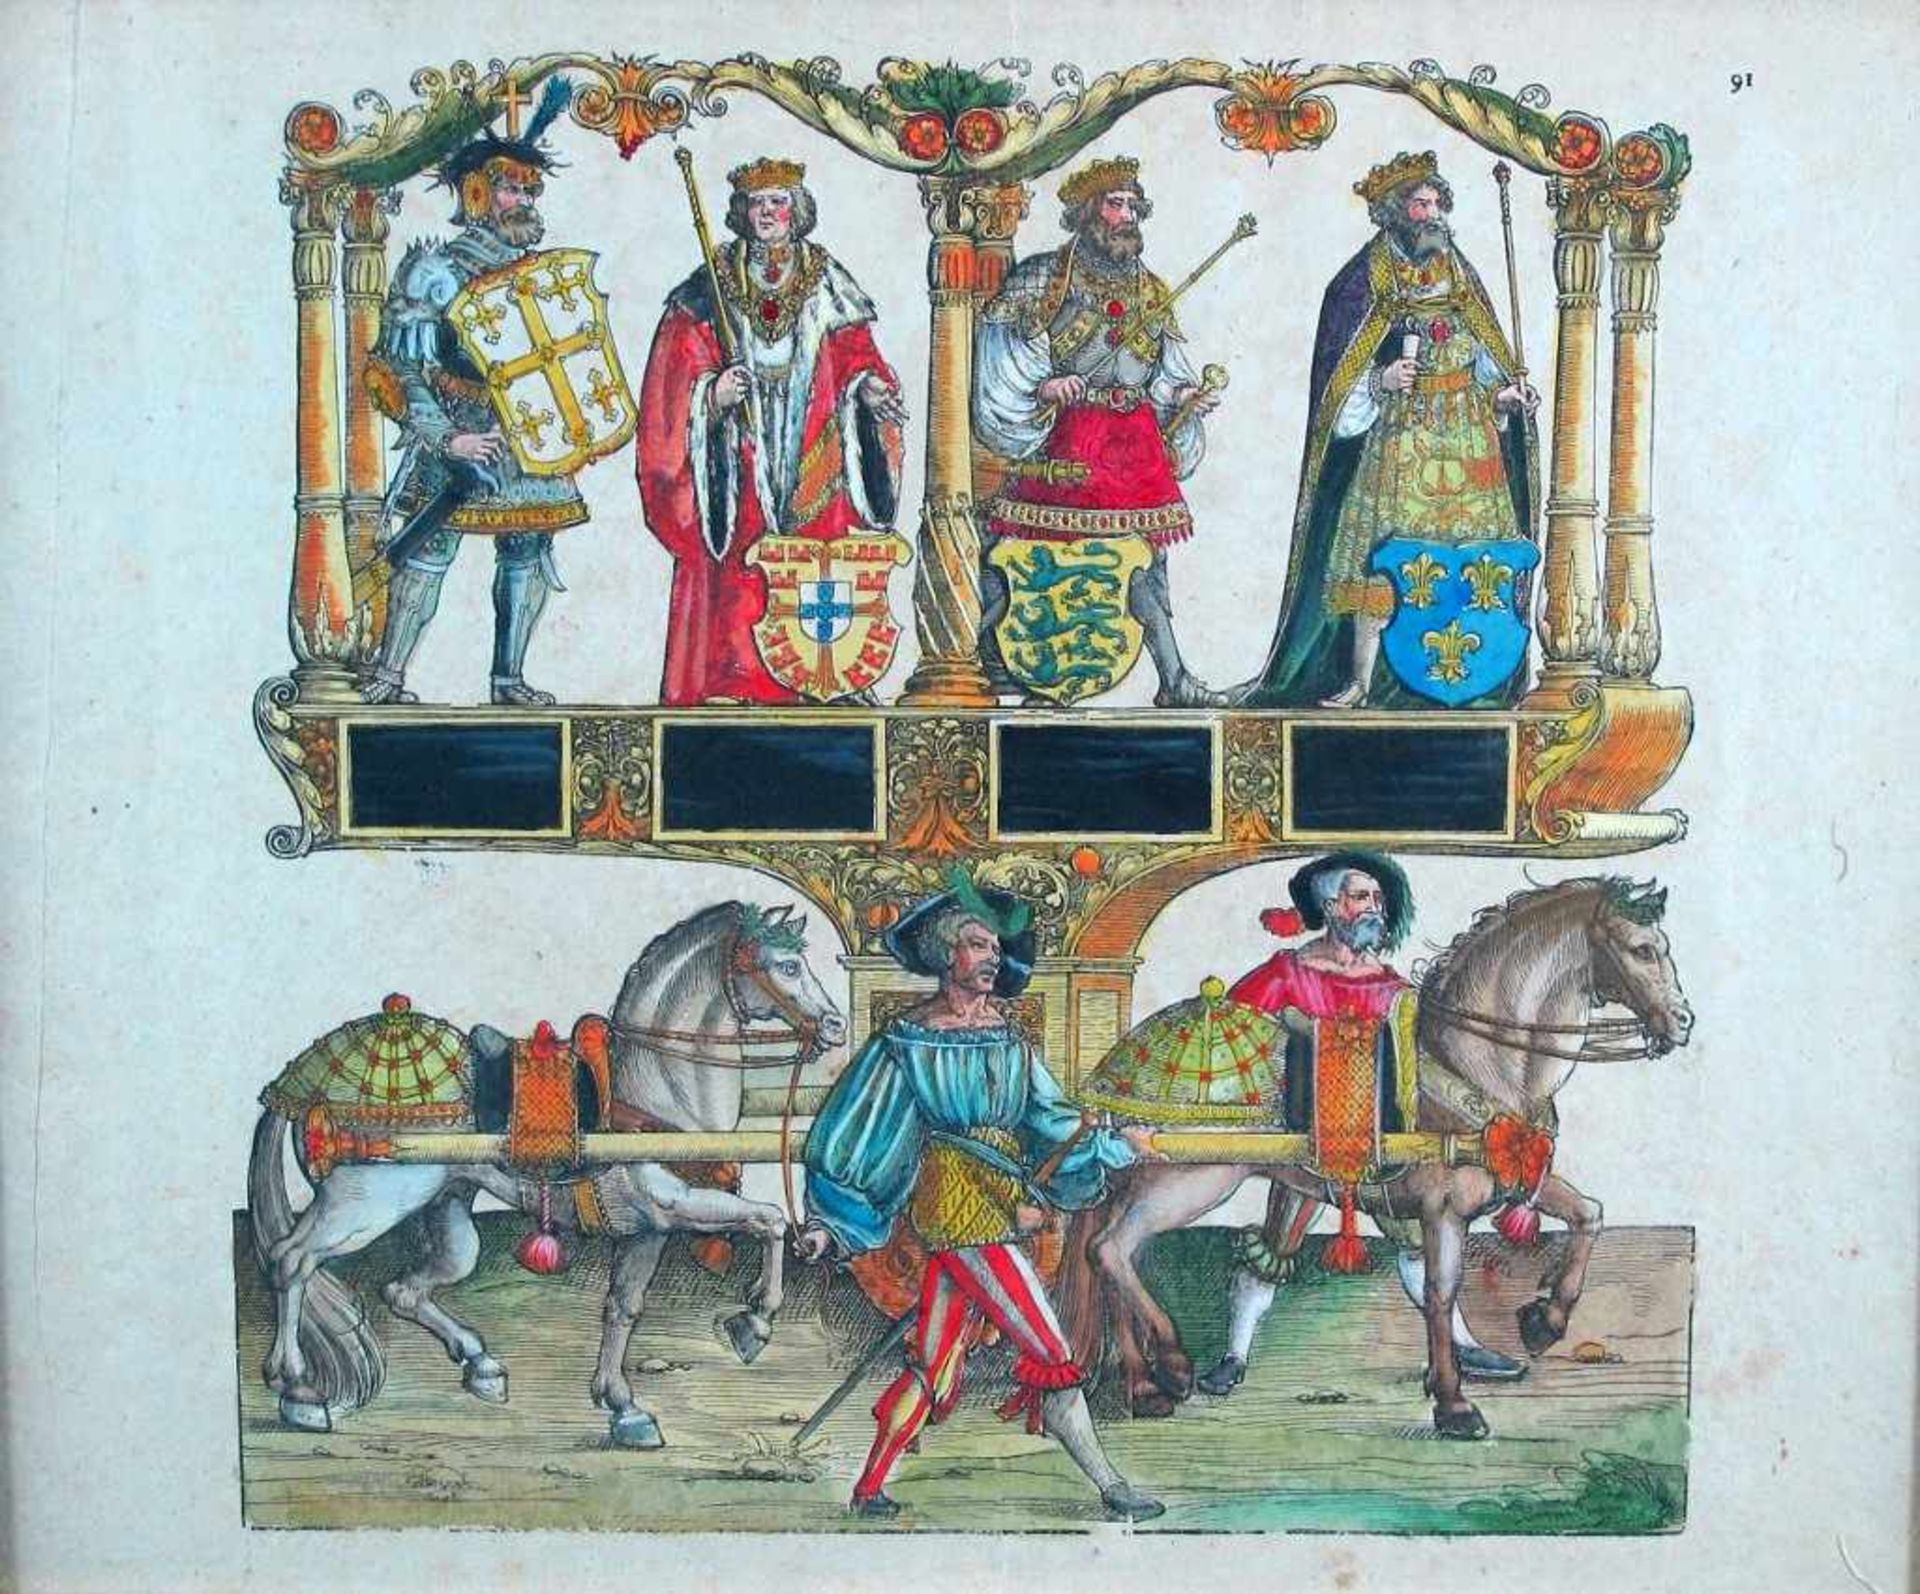 Herrscherdarstellungen mit zugehörigen Wappen, darunter Pferdeparade. Kol. Holzschnitt. Blattgr. ca.